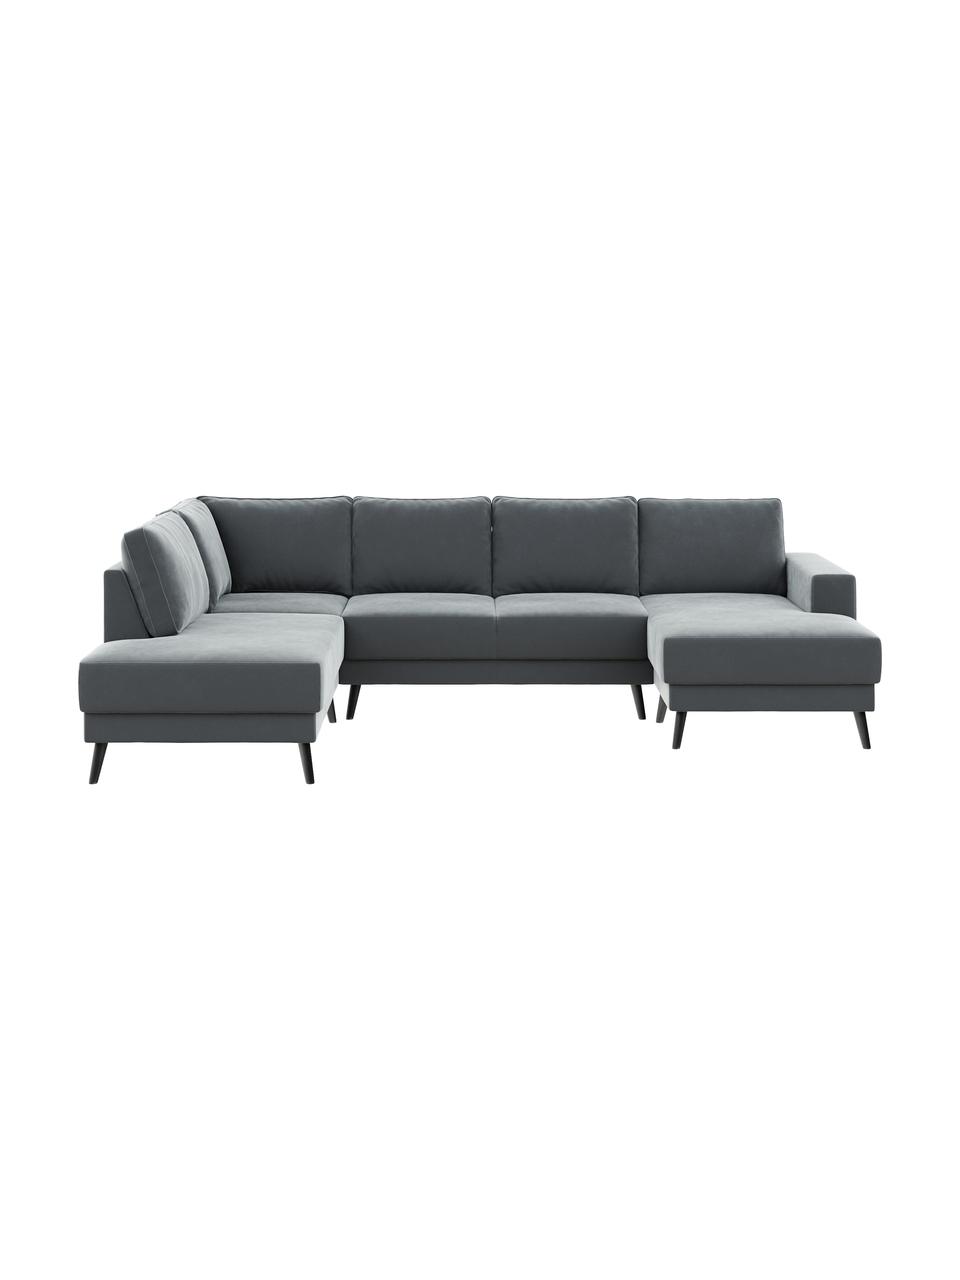 Sofa narożna XL z aksamitu Fynn (5-osobowa), Tapicerka: 100% aksamit poliestrowy , Nogi: drewno lakierowane, Aksamitny stalowy szary, S 306 x G 200 cm, lewostronna